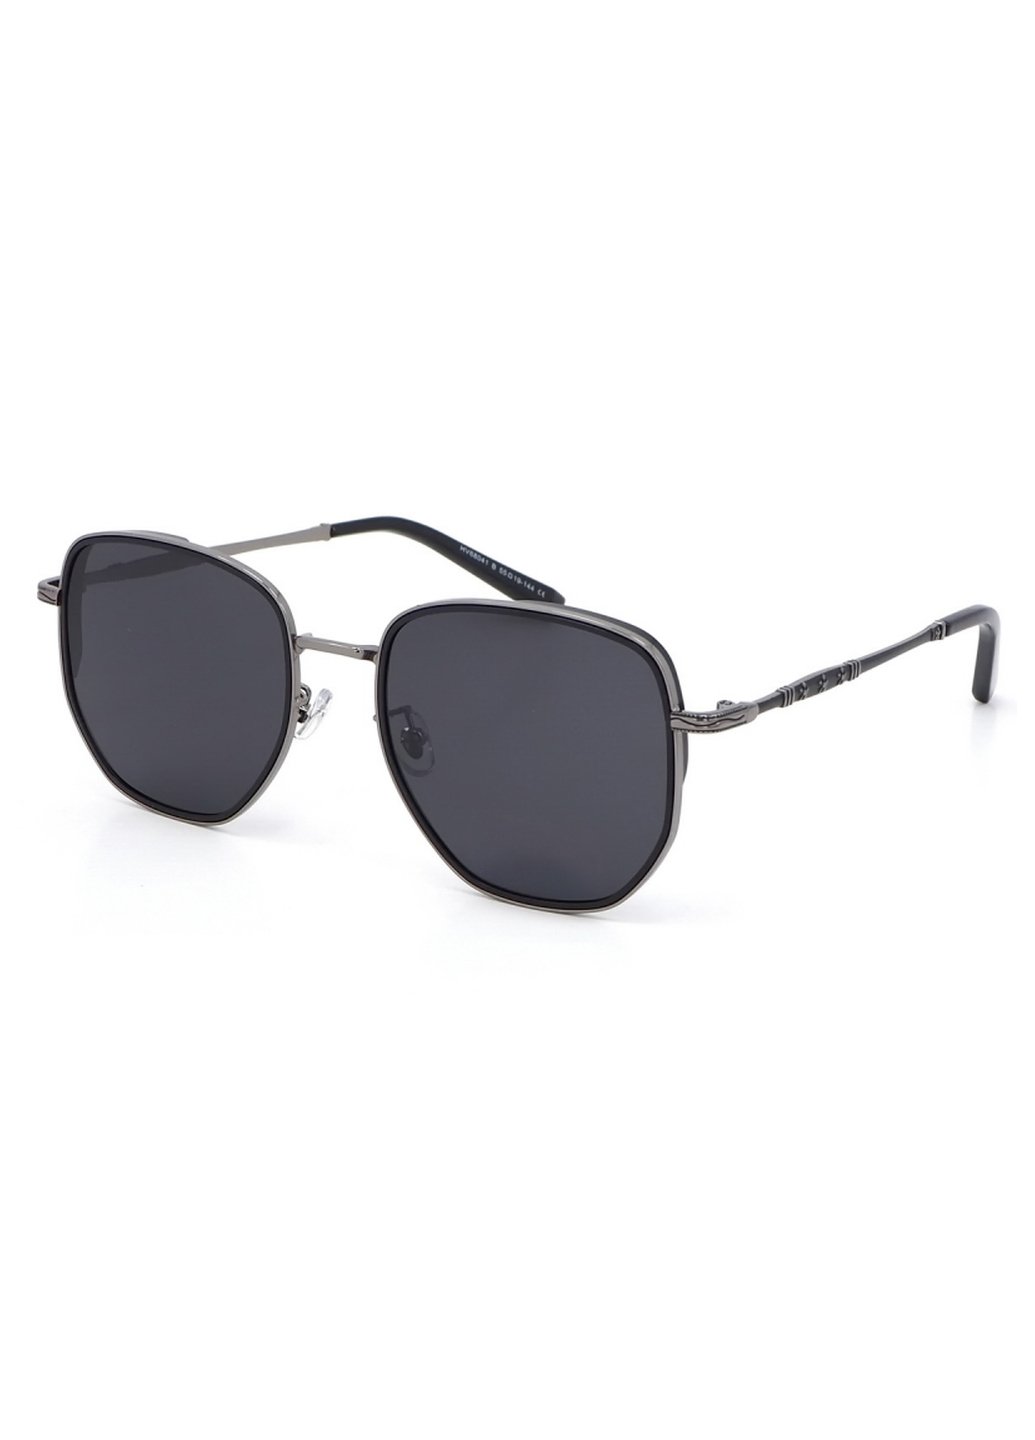 Купить Солнцезащитные очки c поляризацией HAVVS HV68041 170033 - Черный в интернет-магазине